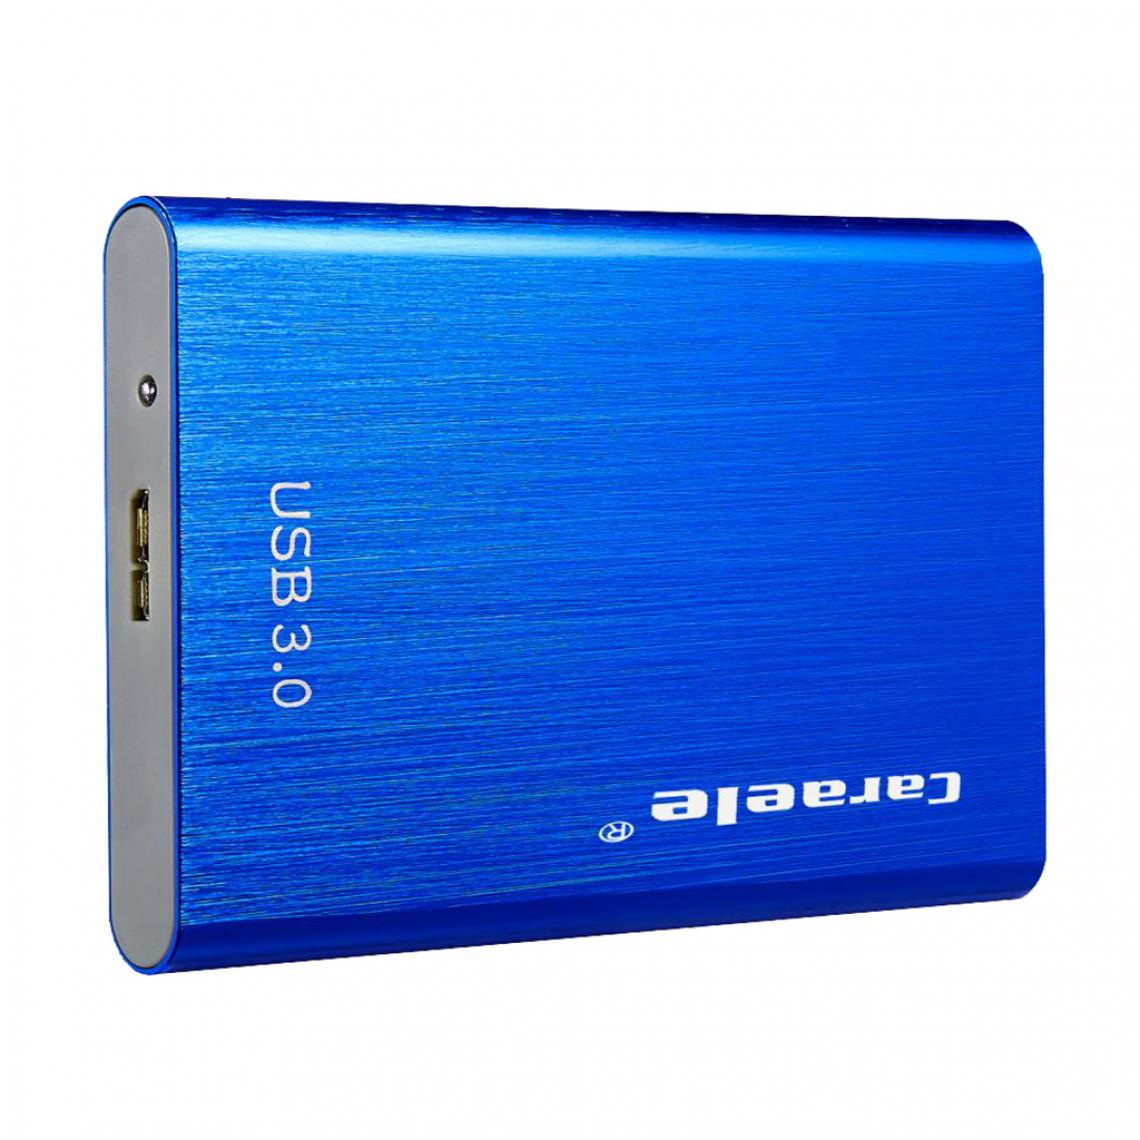 marque generique - Disque dur externe Disque dur Lecteur portable Bleu 1T - Boitier PC